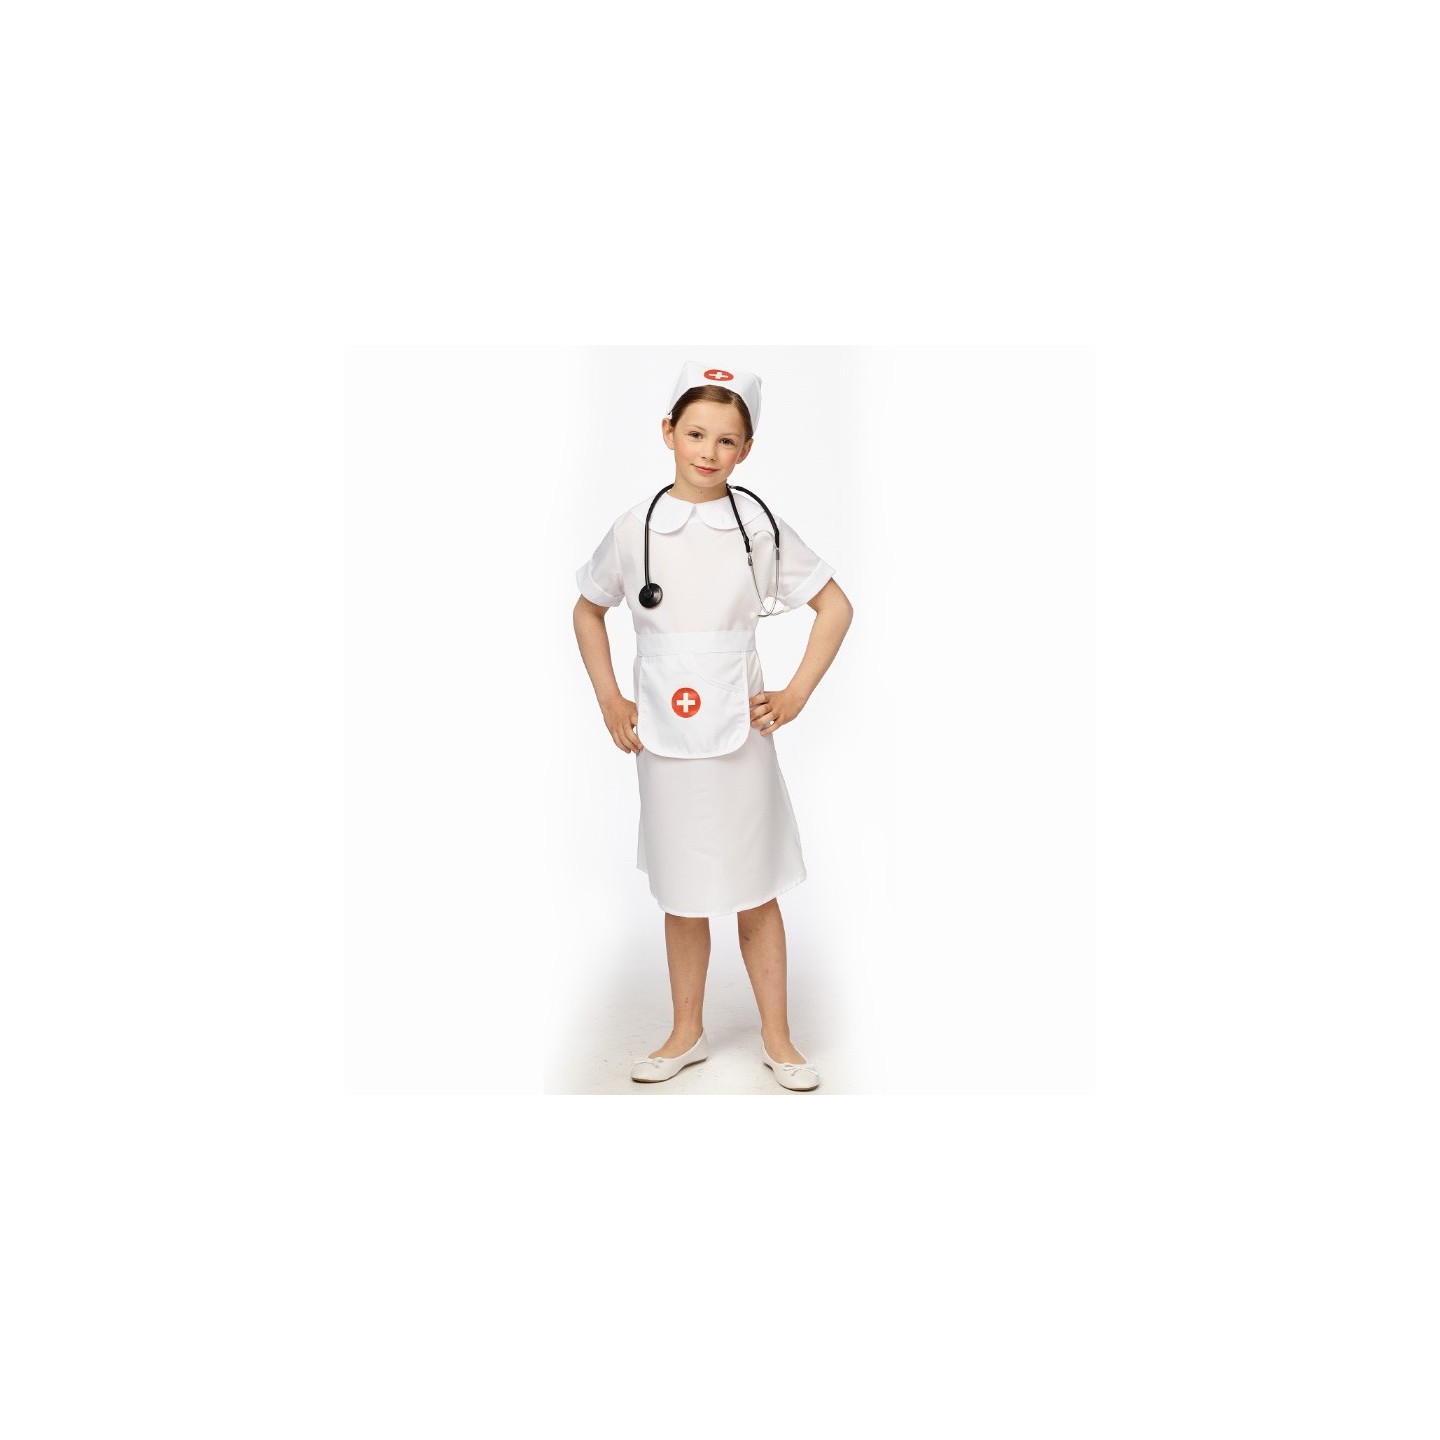 Wacht even Arena Groot universum Verpleegster kostuum kind | Jokershop.be - Carnaval kostuums